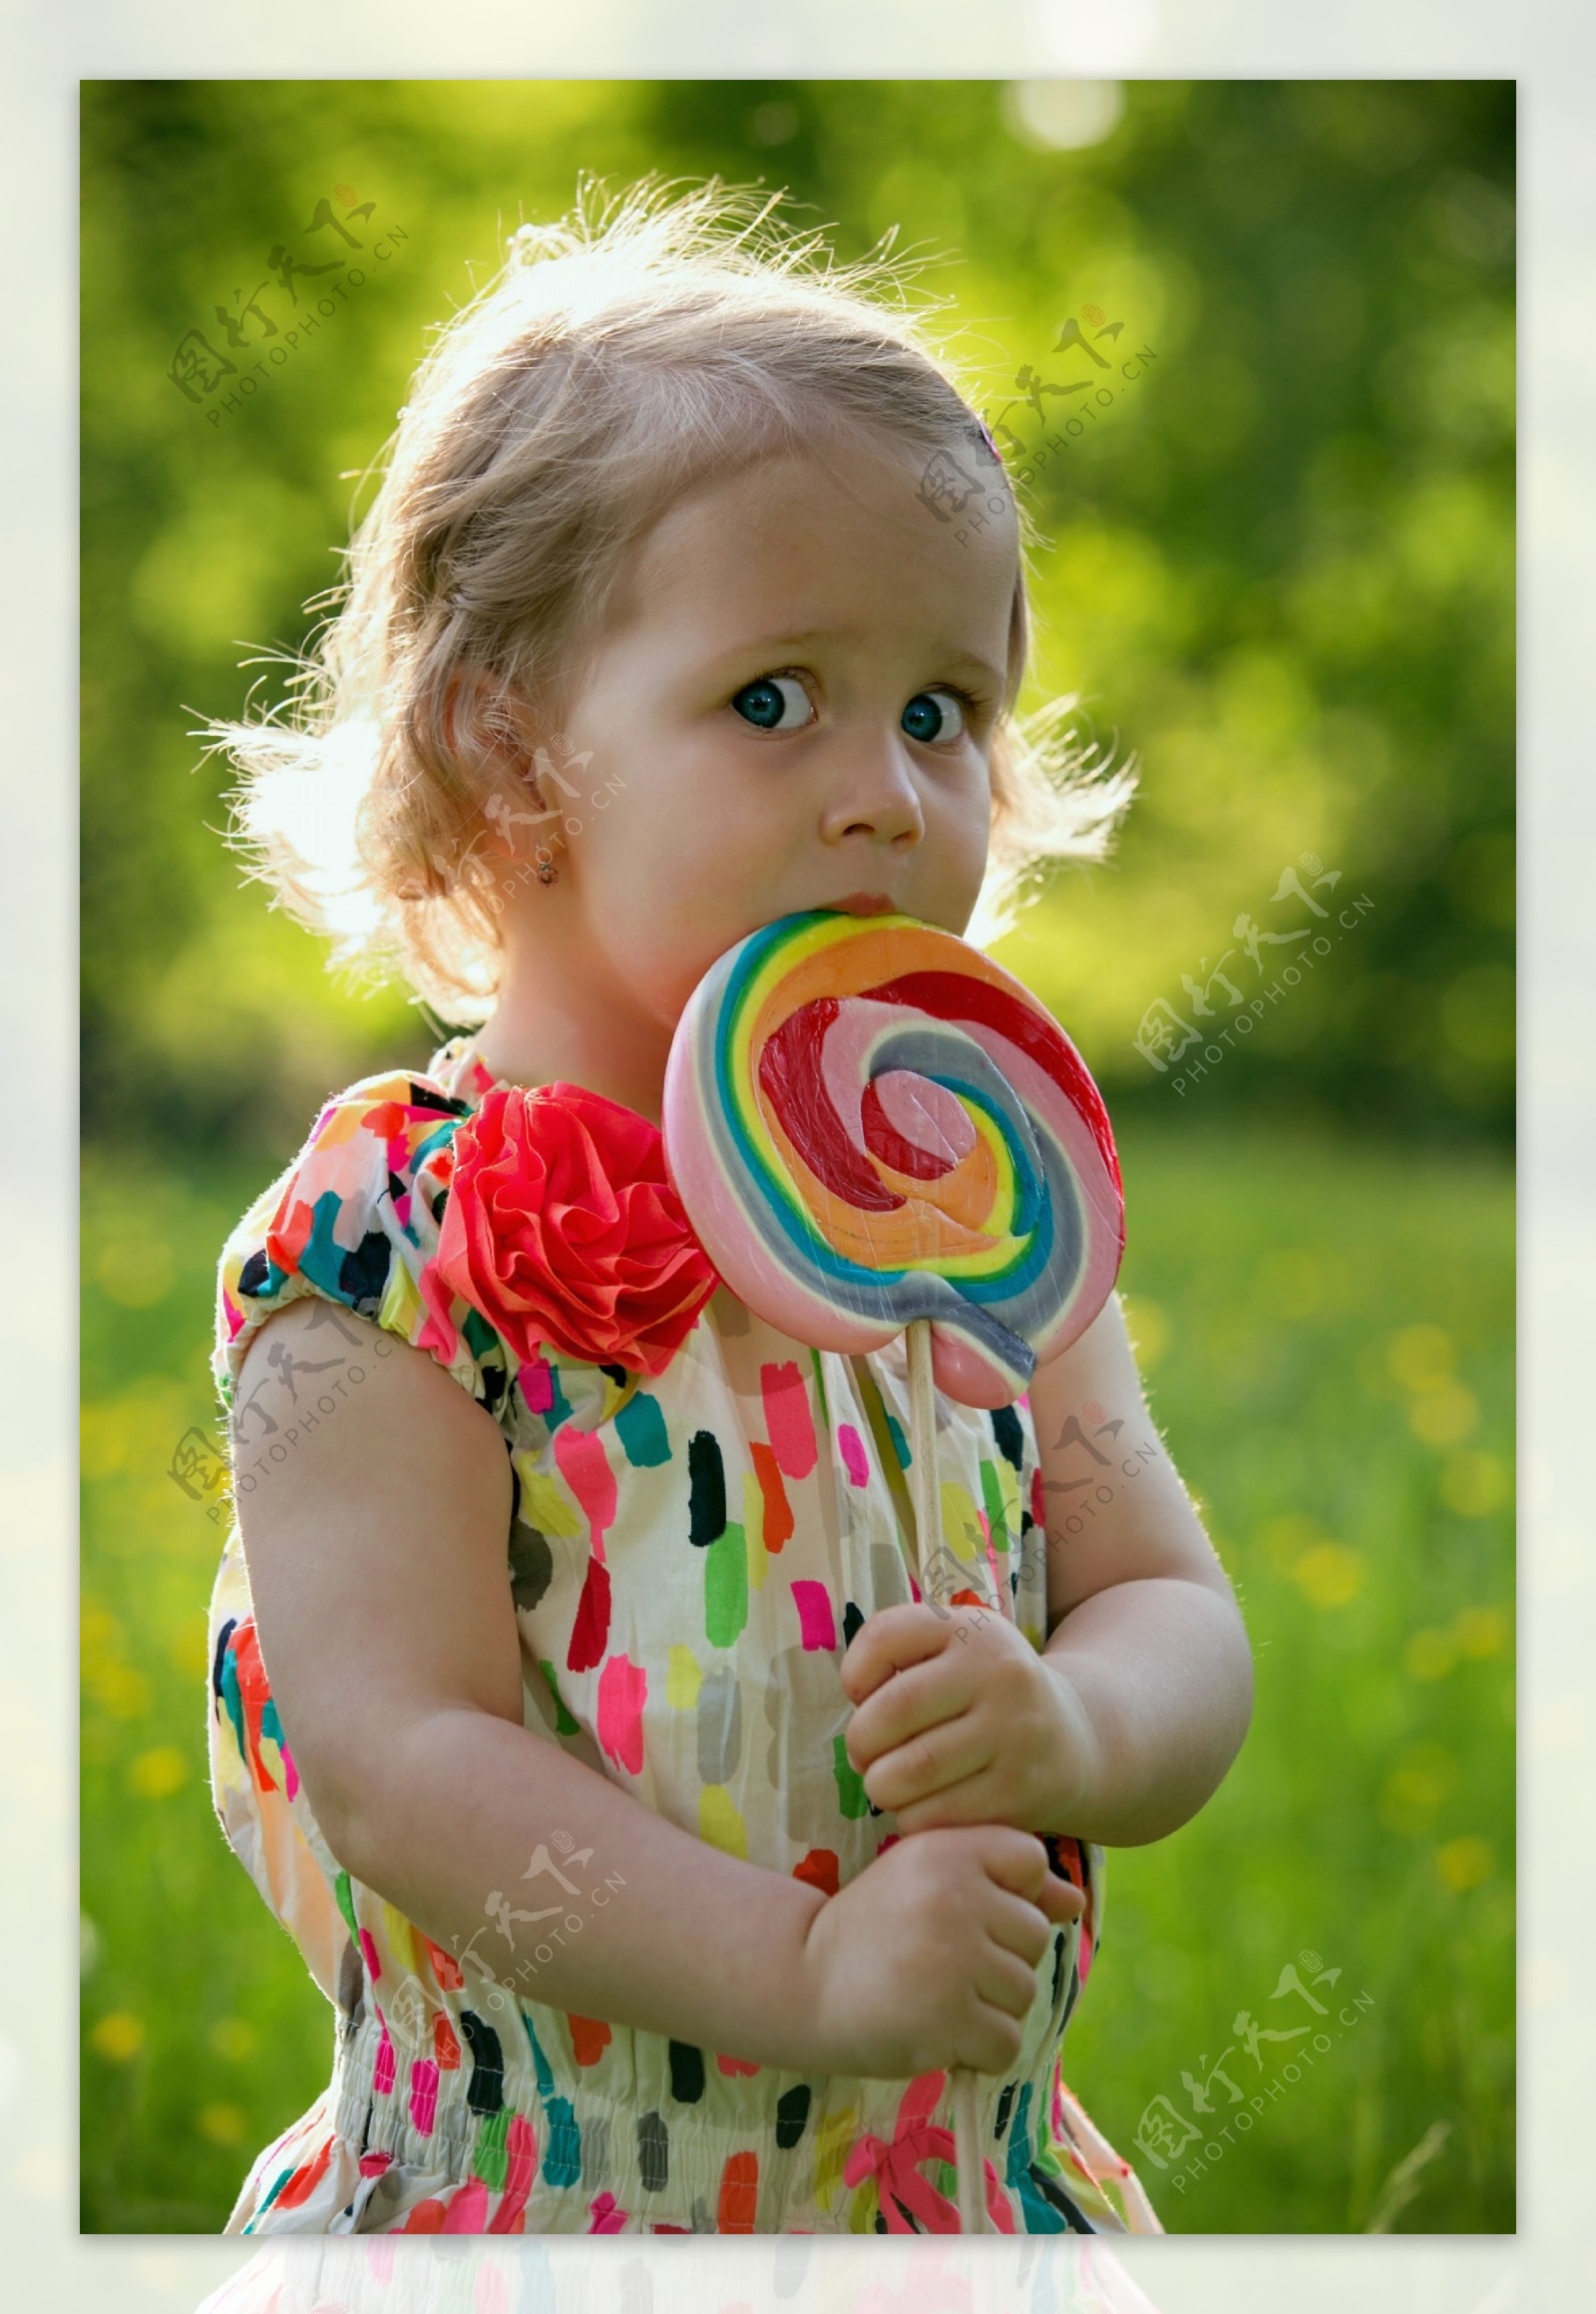 带甜棒棒糖的小女孩 库存图片. 图片 包括有 乐趣, 背包, 有吸引力的, 少许, 衣物, 棒棒糖, 童年 - 162698835